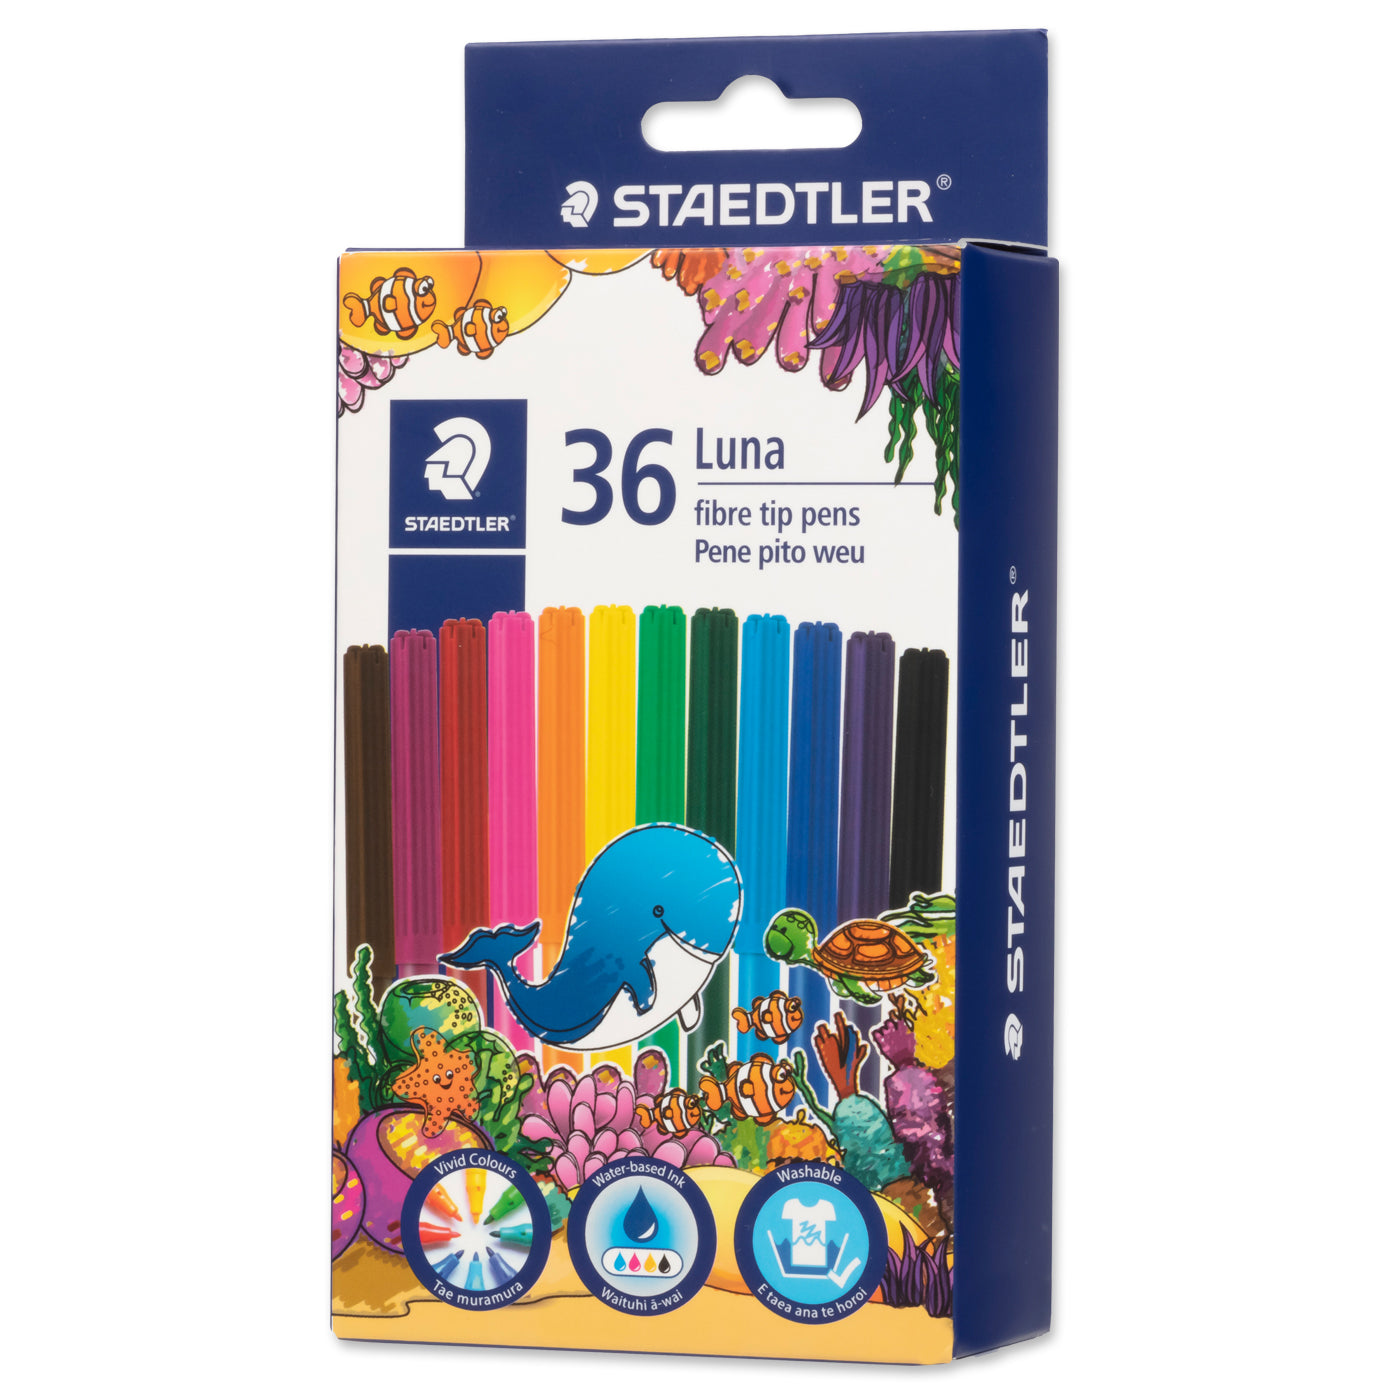 Staedtler Luna Fibre Tip Felt Pen Markers 24 Assorted Colours Box of 36